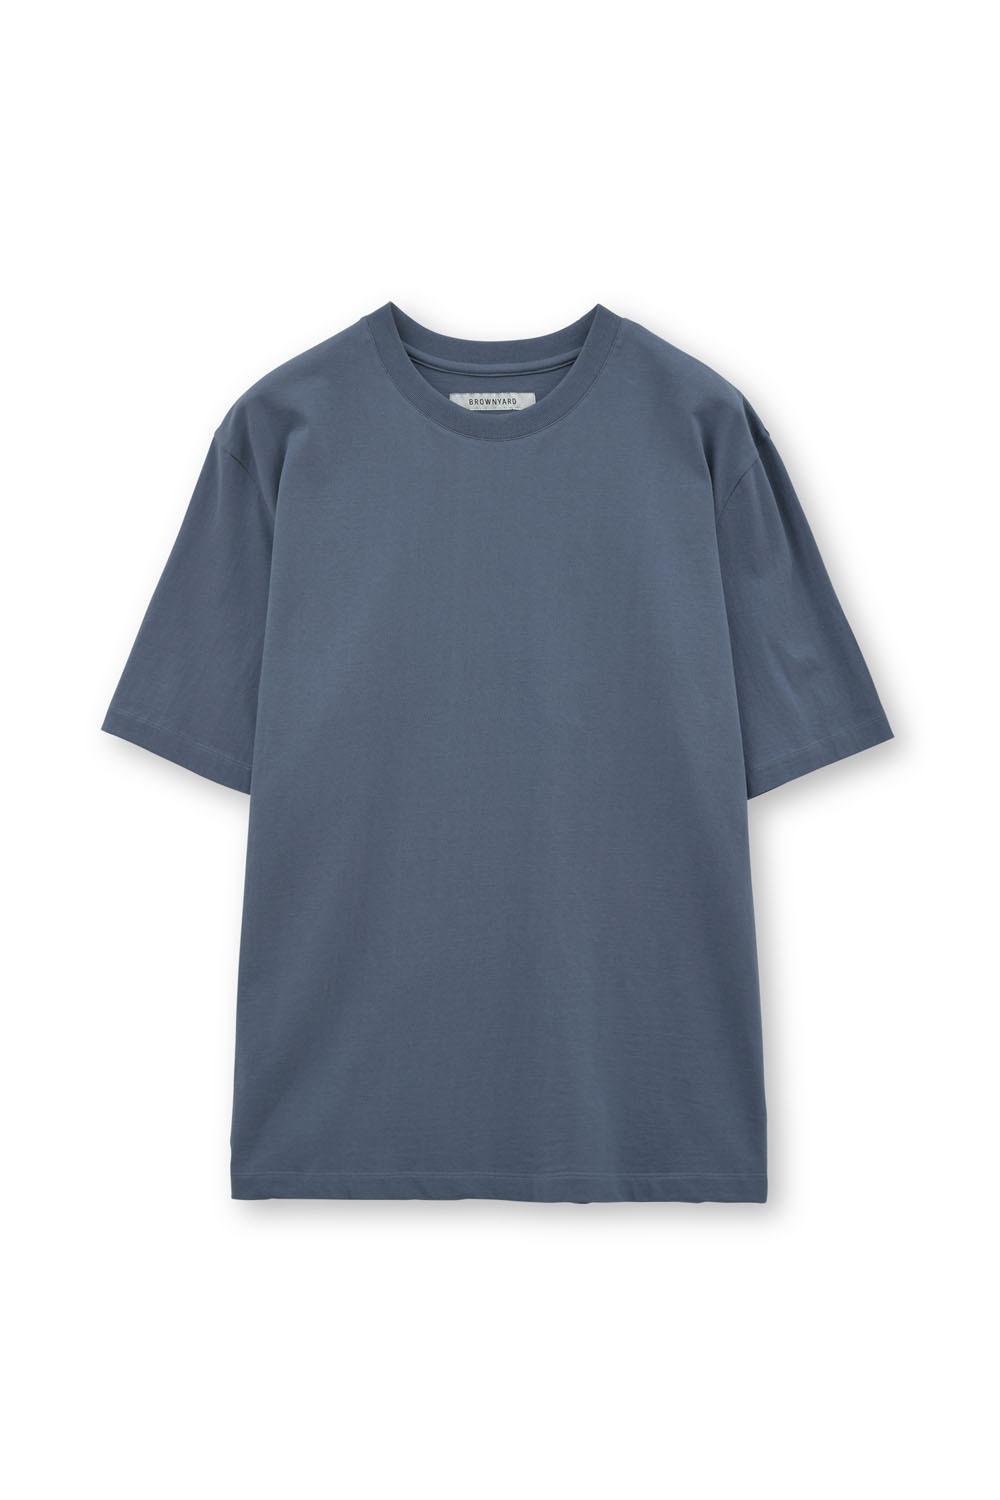 Essential T Shirt-Blue Grey